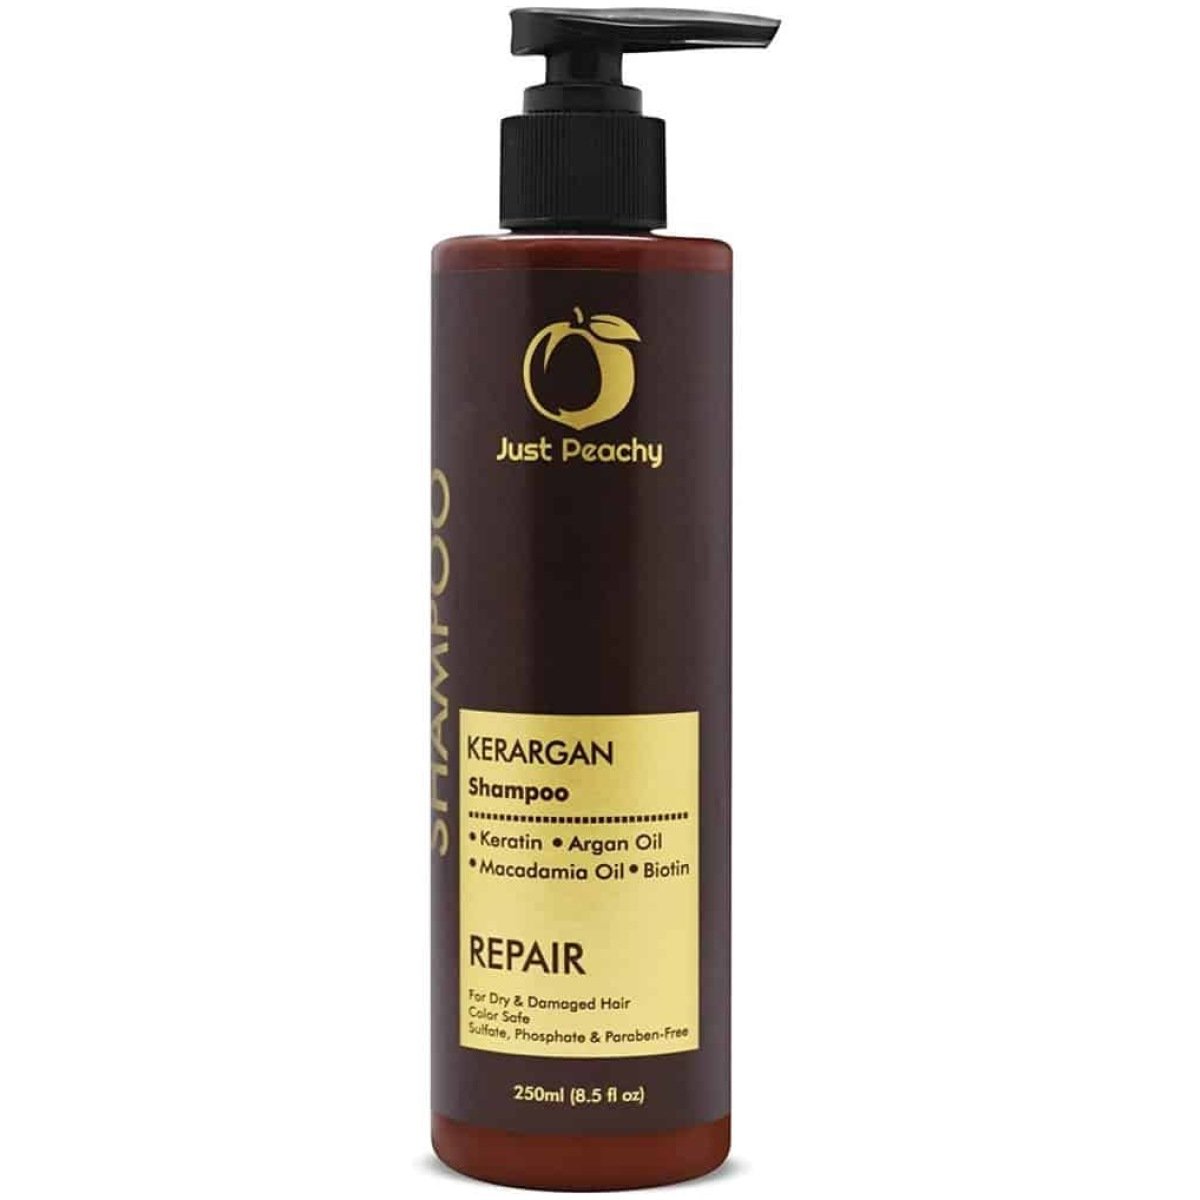 Just Peachy KerArgan Repair Shampoo Keratin Moroccan Argan Oil For Dry & Damaged Hair 250ml